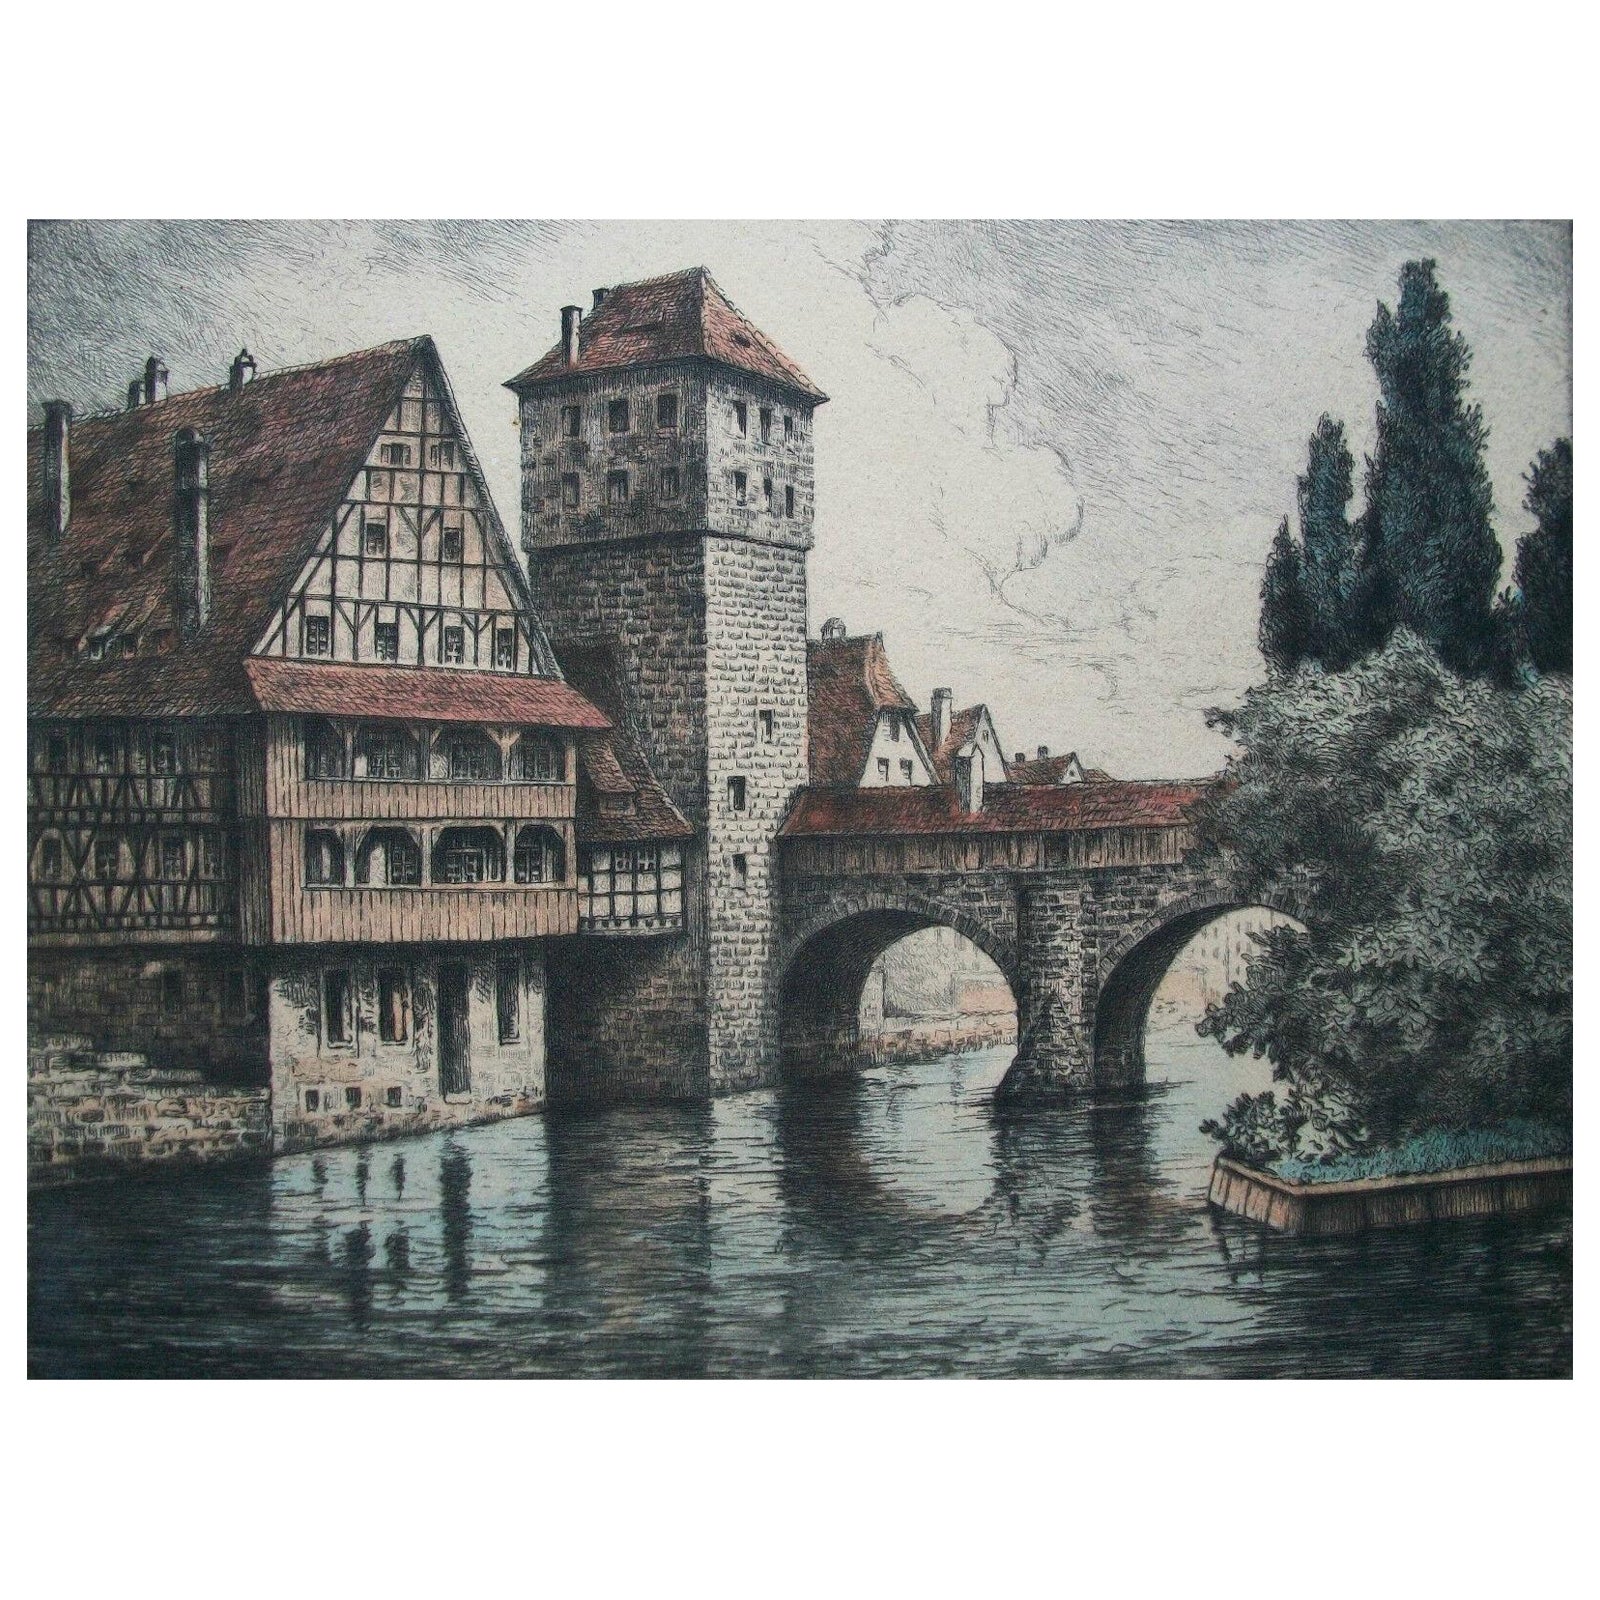 Le pont de Hangman - gravure d'art colorée à la main - Allemagne - vers 1900